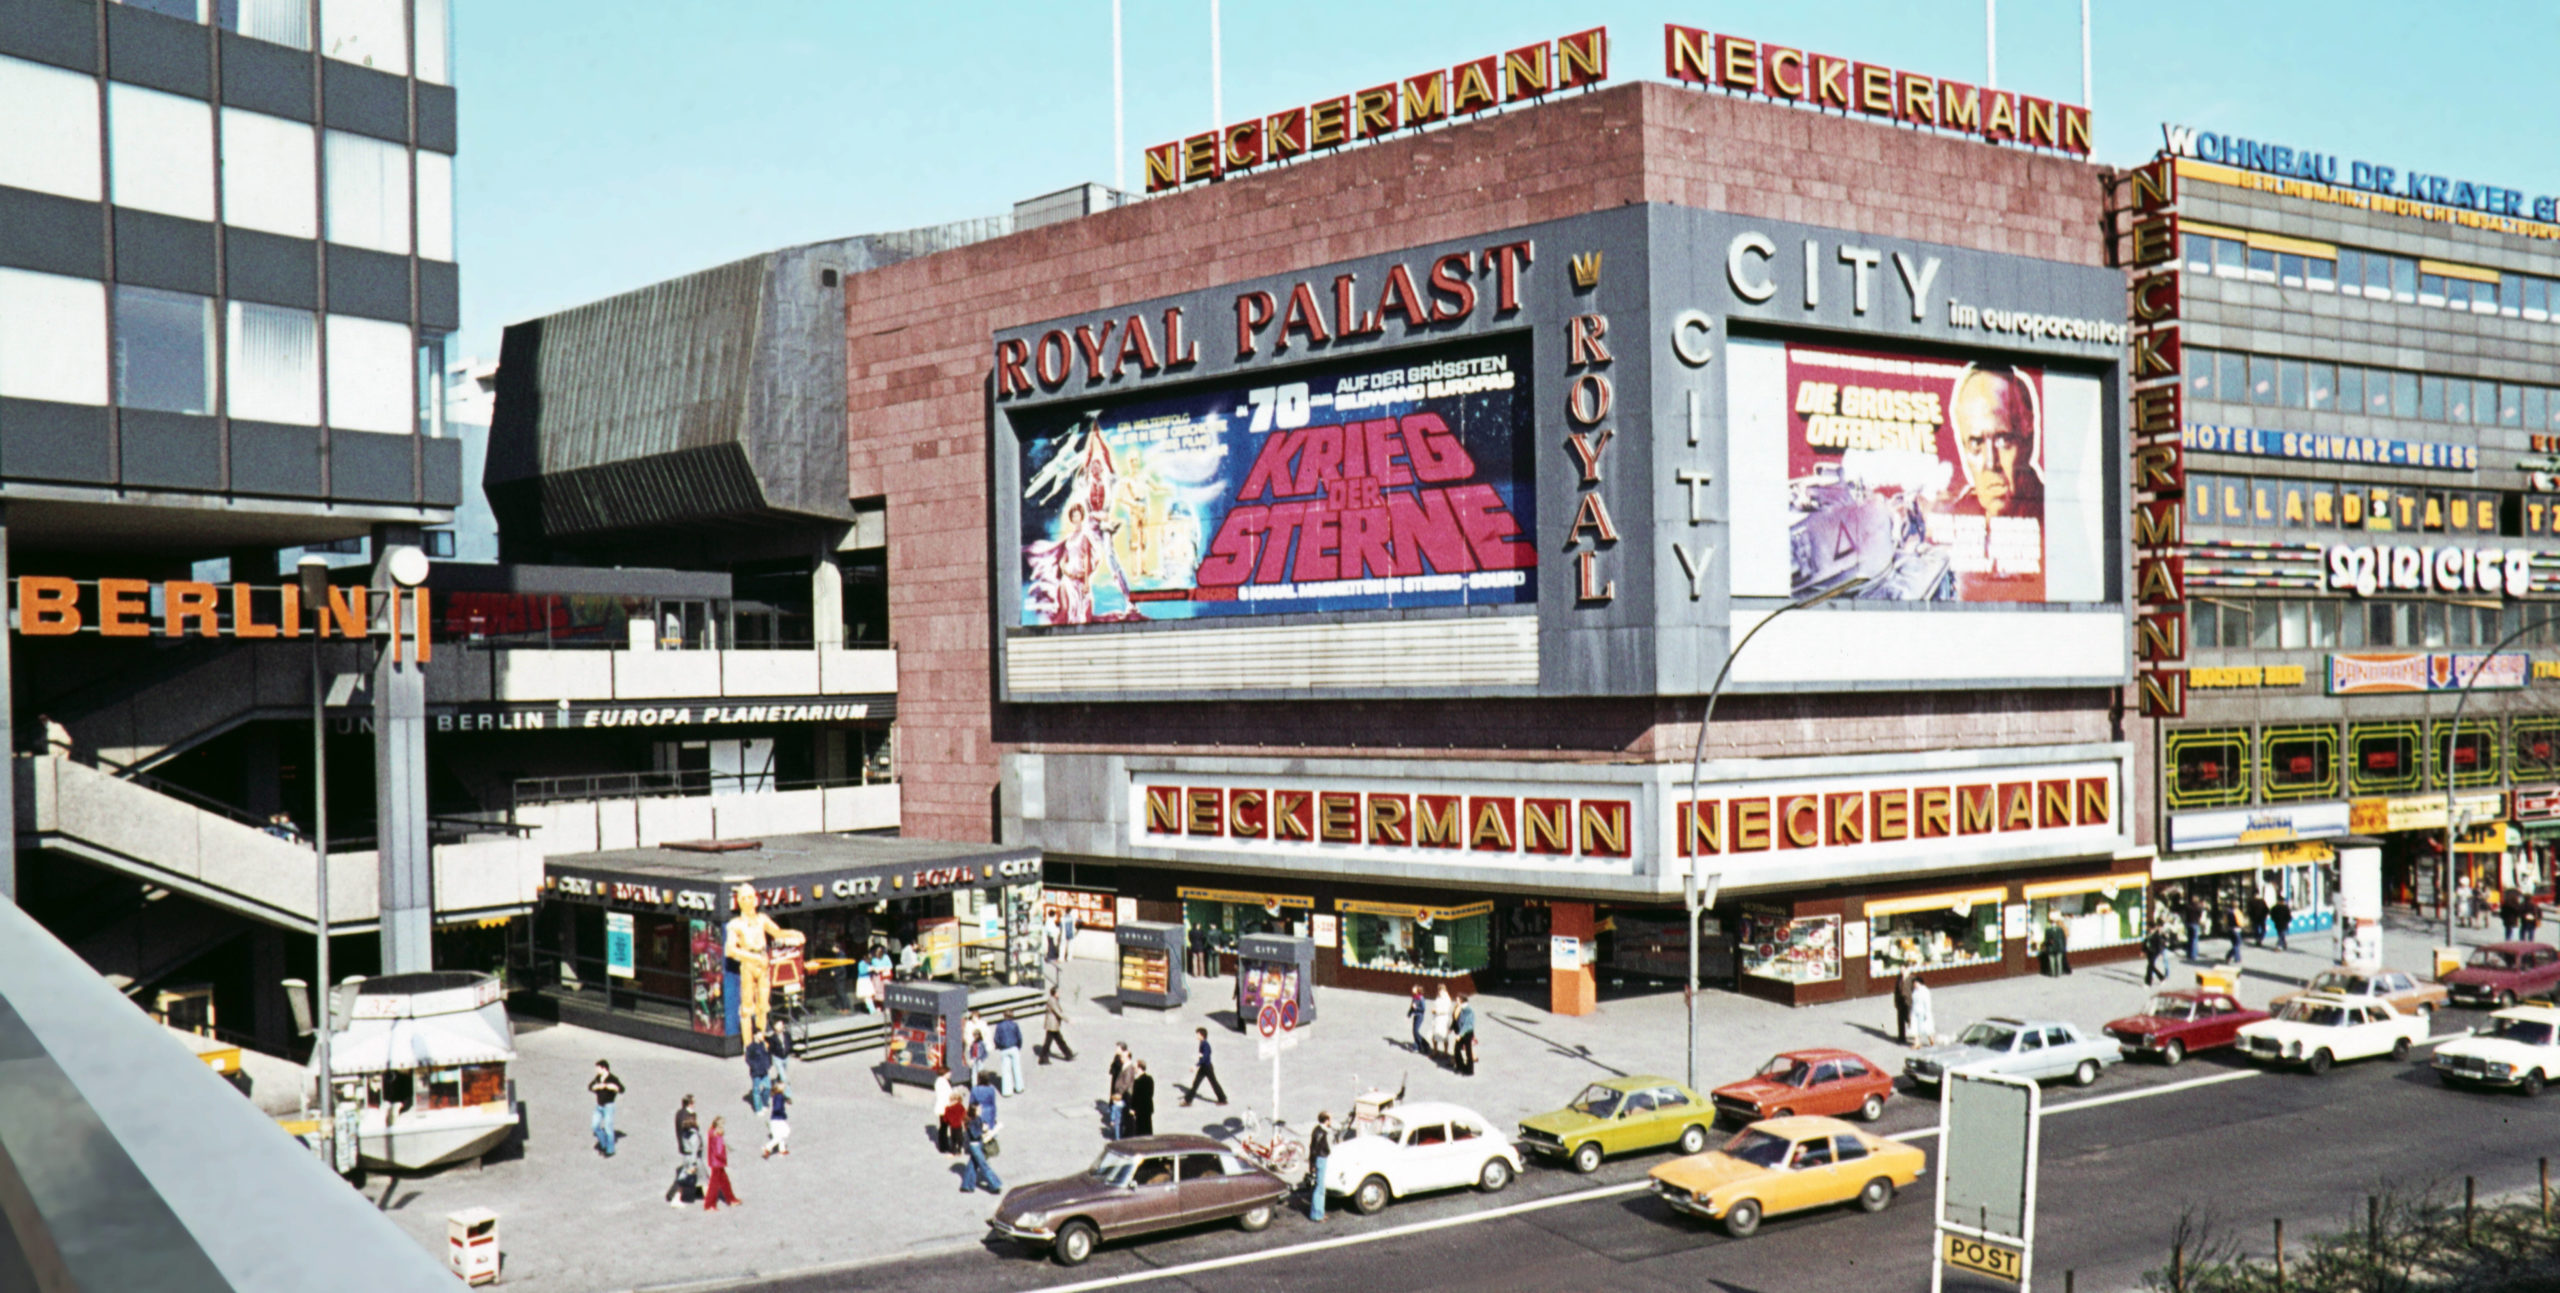 Royal Palast, erstes Kino mit gekrümmter Leinwand, späte 1970er-Jahre. Foto: Imago/Serienlicht